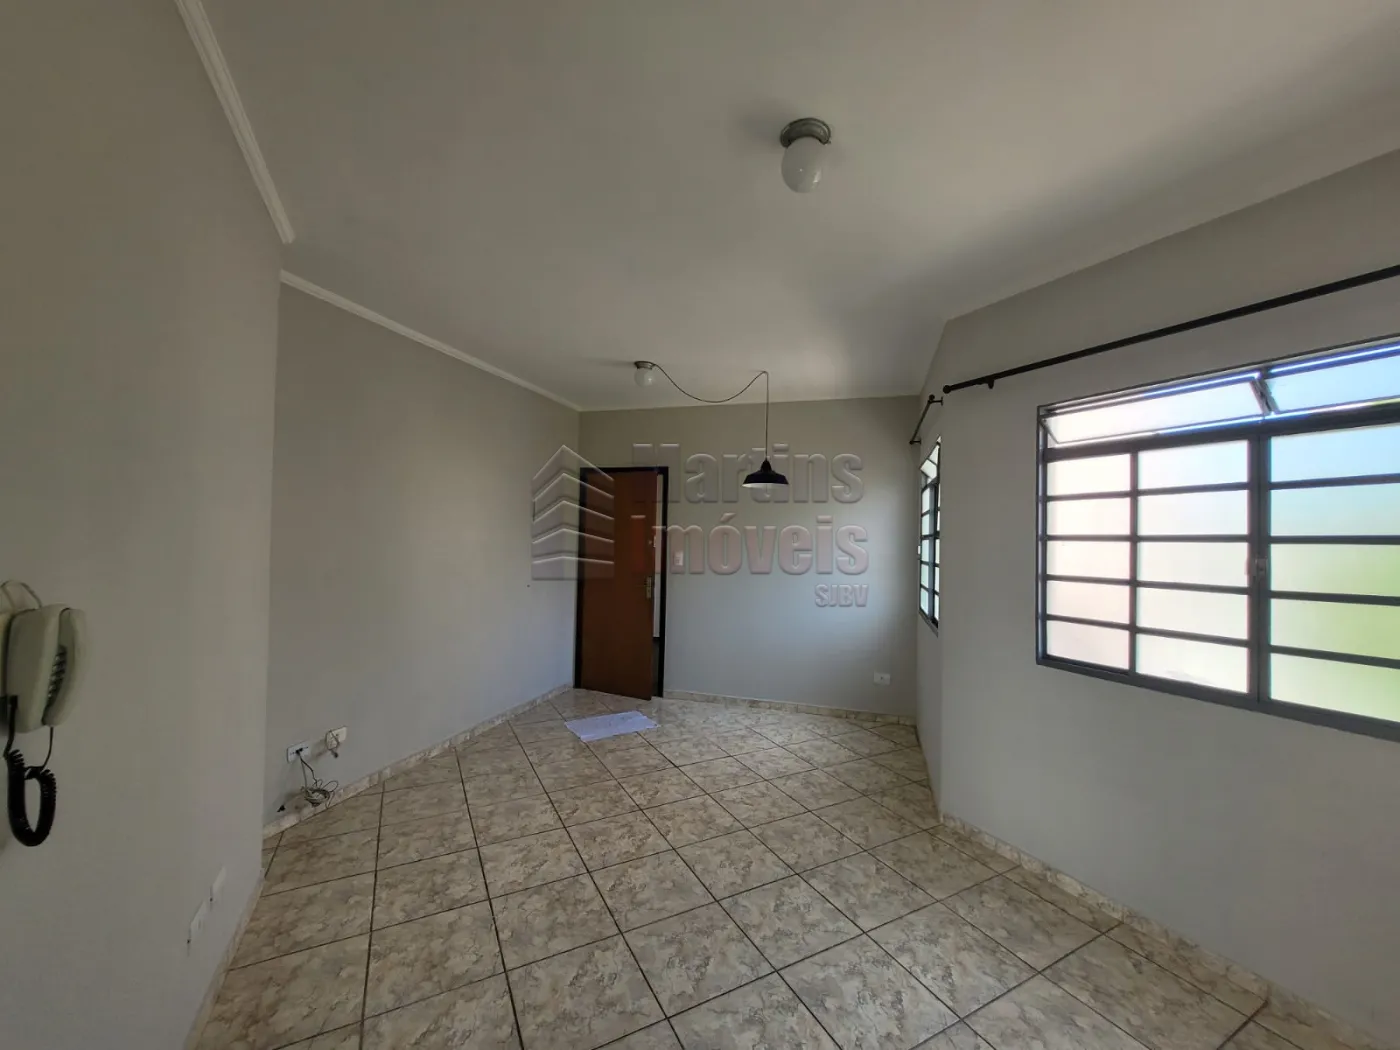 Alugar Apartamento / Padrão em São João da Boa Vista R$ 1.250,00 - Foto 4